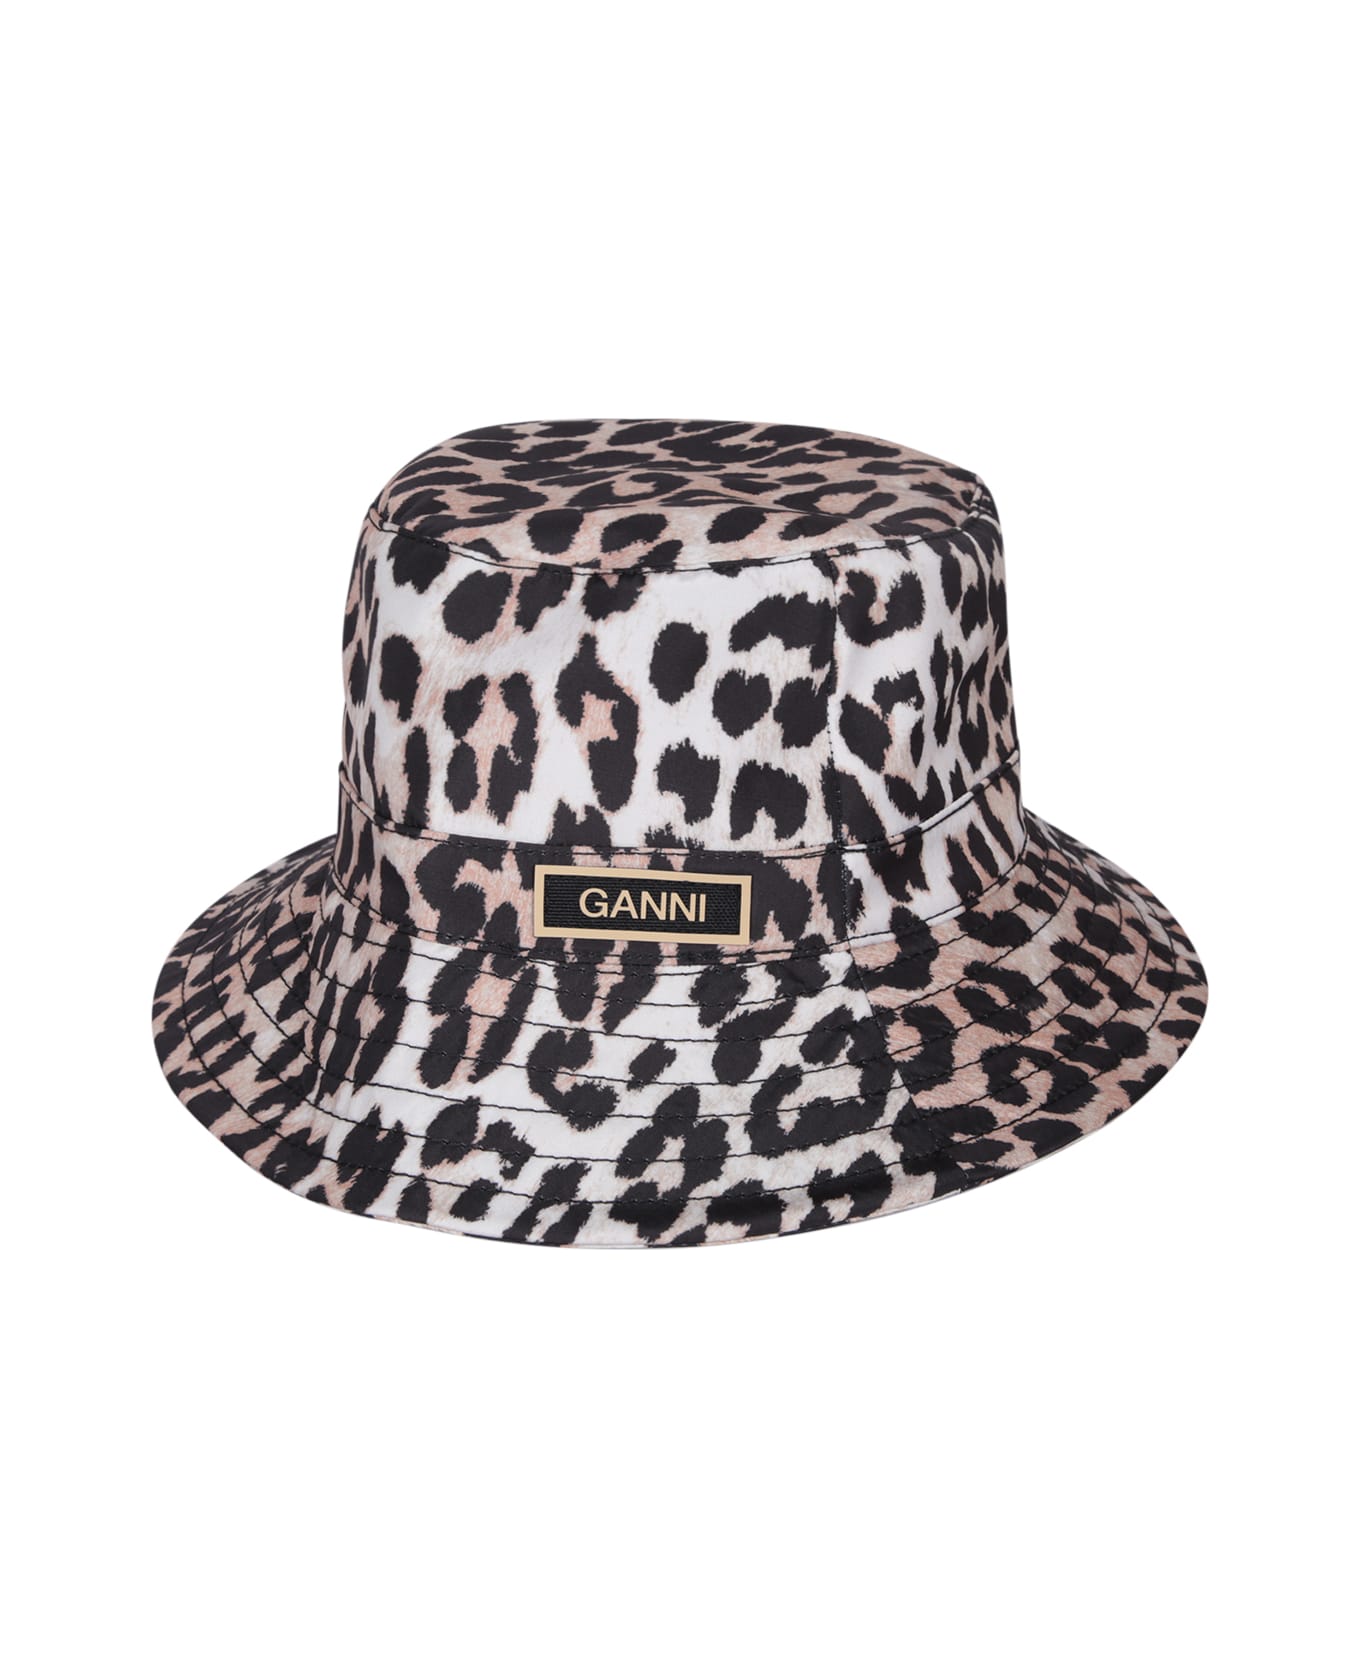 Ganni Leopard Print Bucket Hat - Multi 帽子